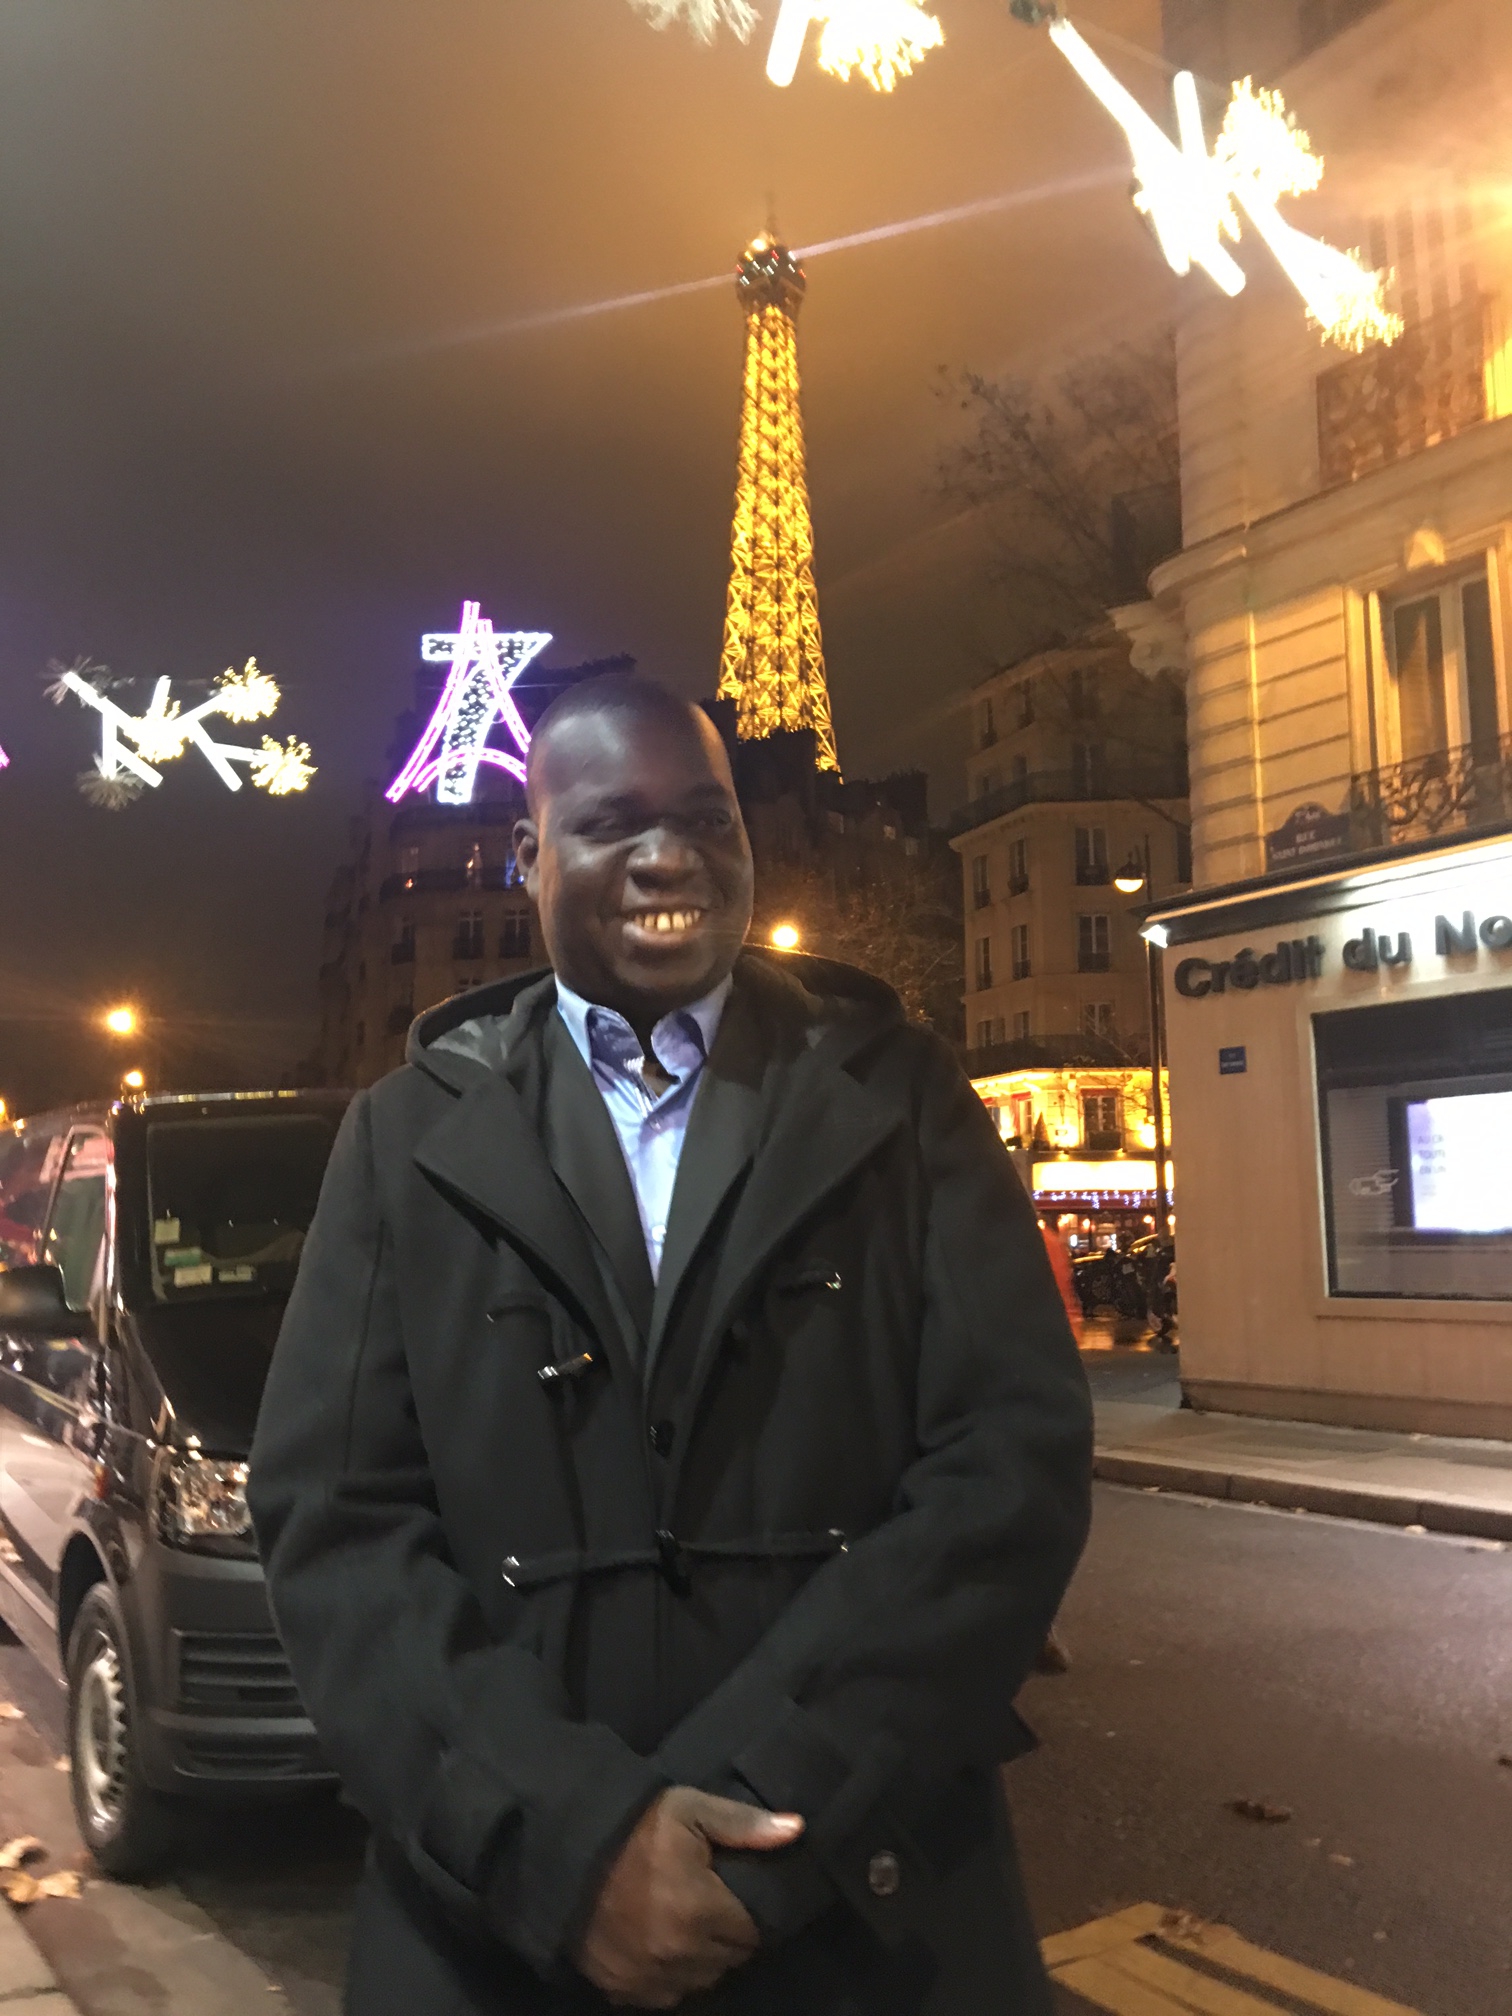 PARIS : Le journaliste El Malick Seck à Paris pour la visite d'Etat du président Macky Sall